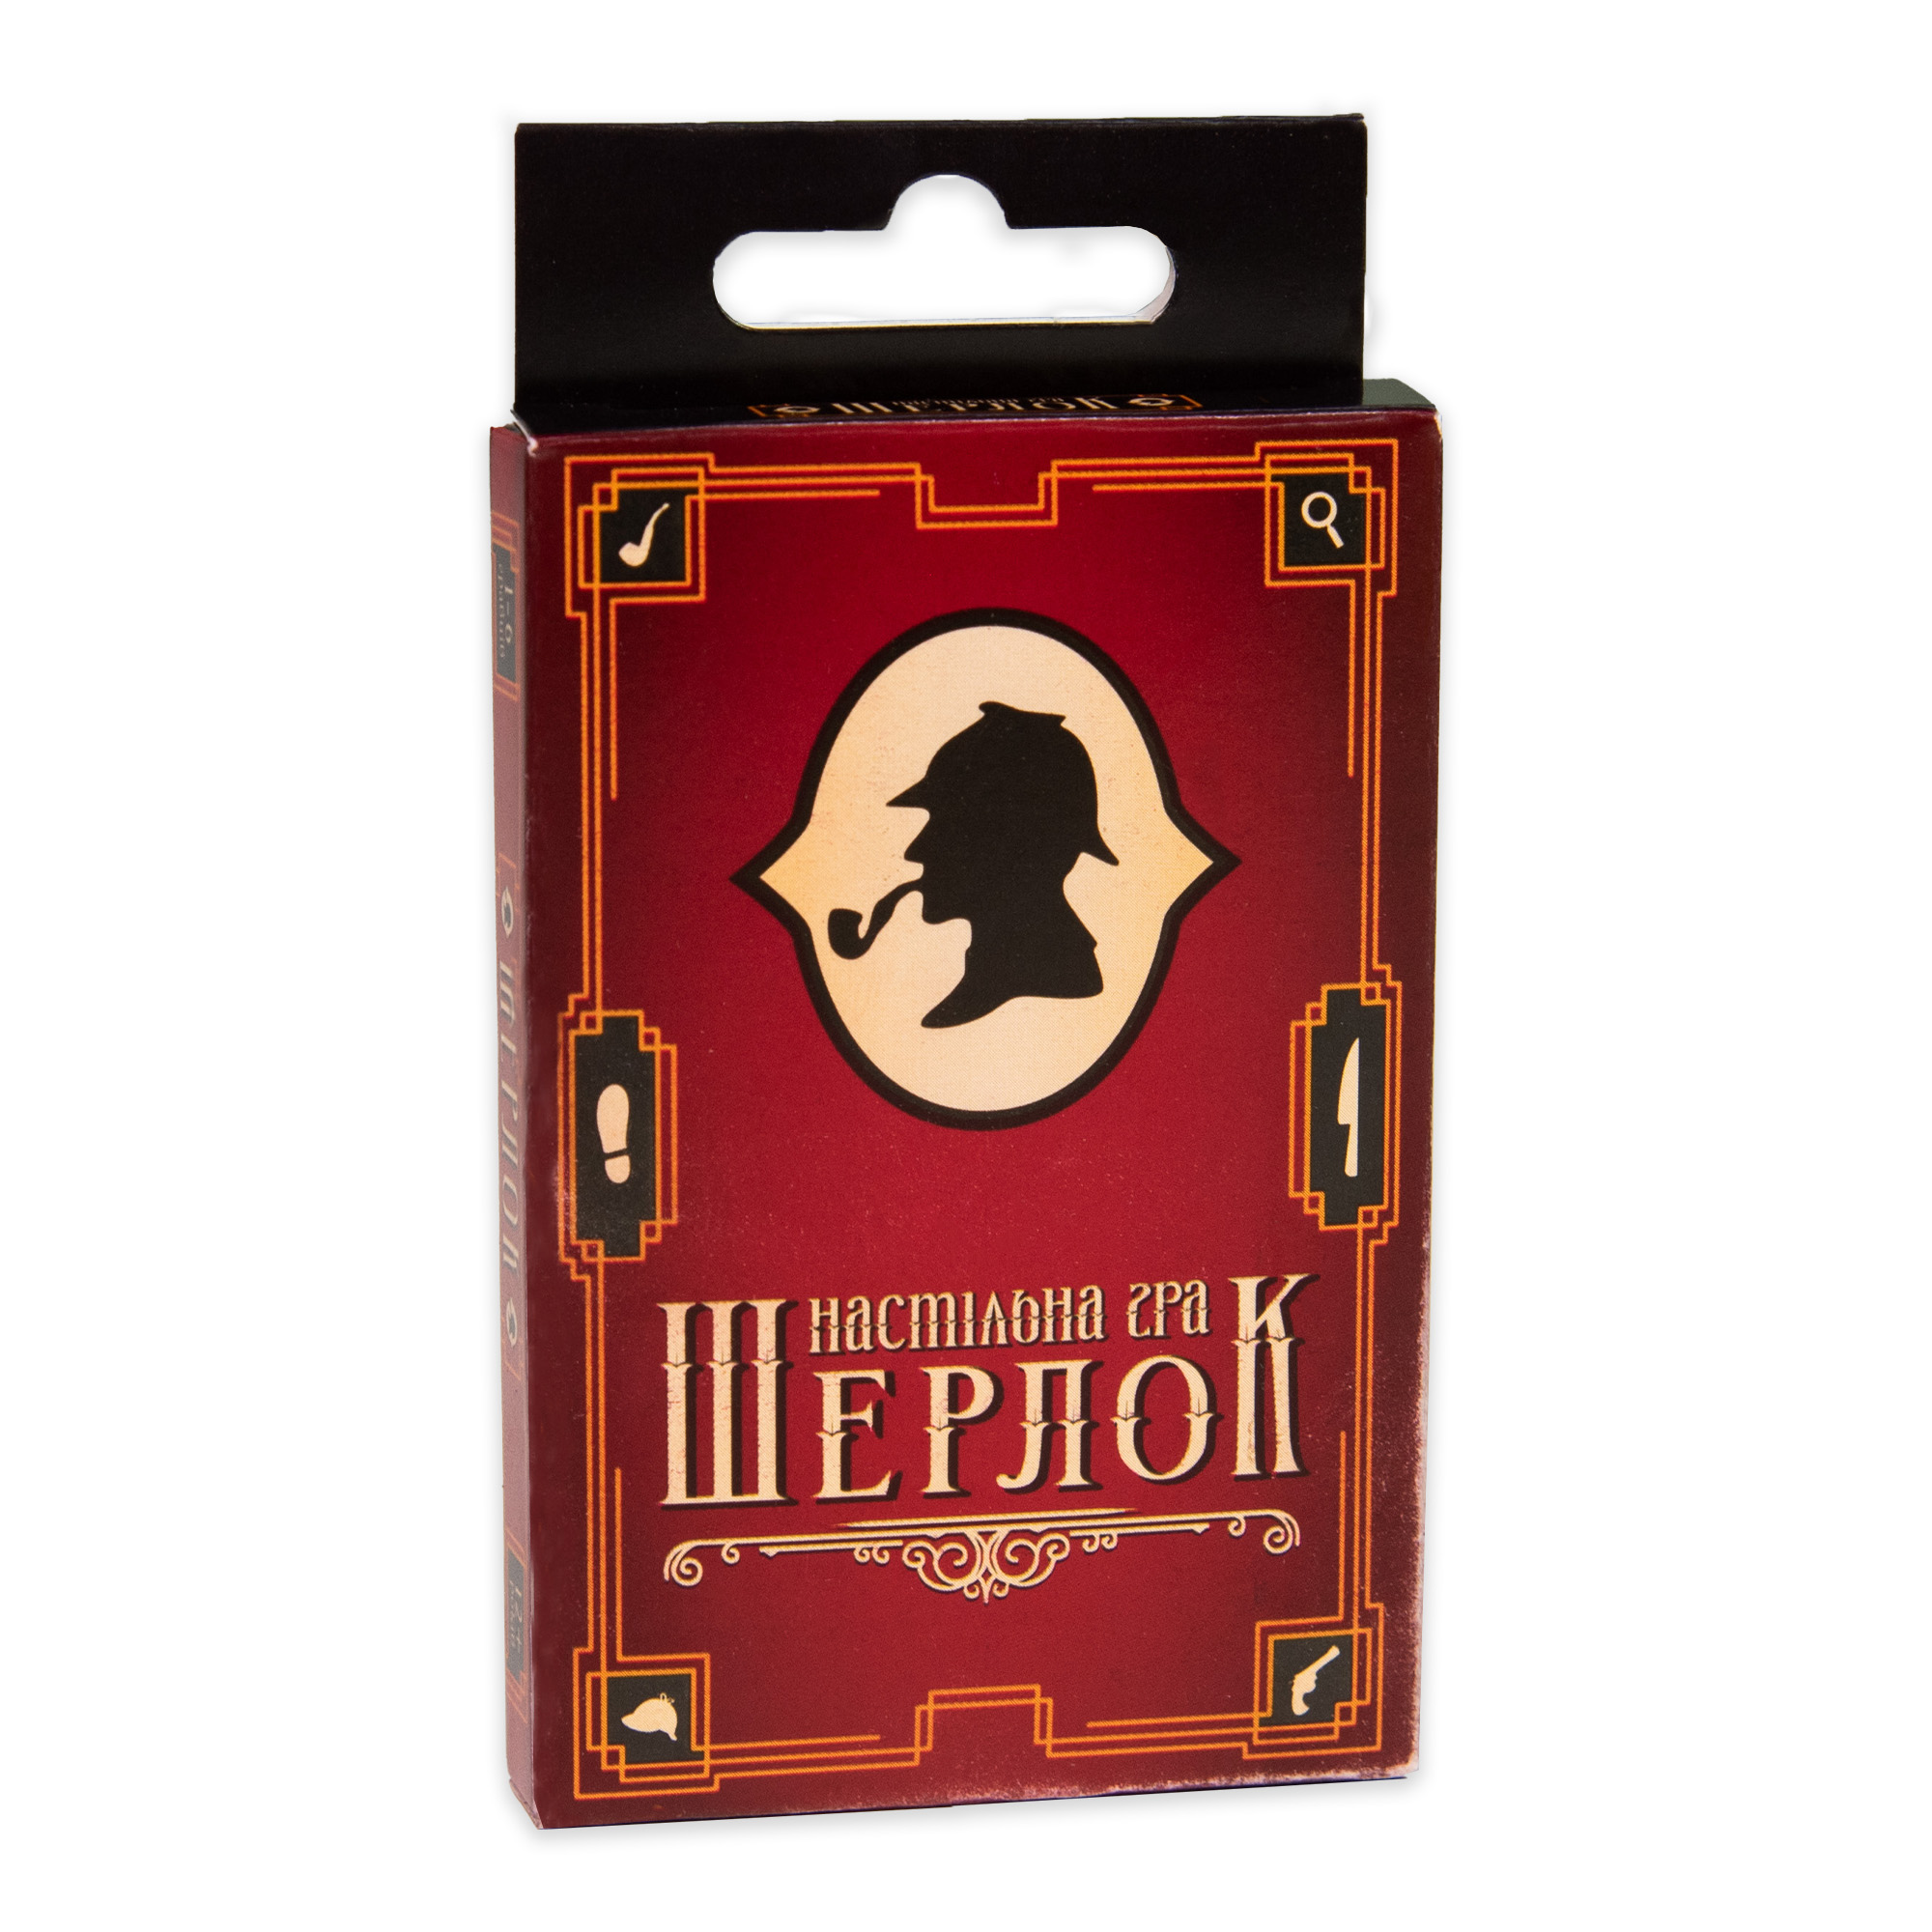 Brettspiel Strateg Sherlock ist unterhaltsam auf Ukrainisch (30338)